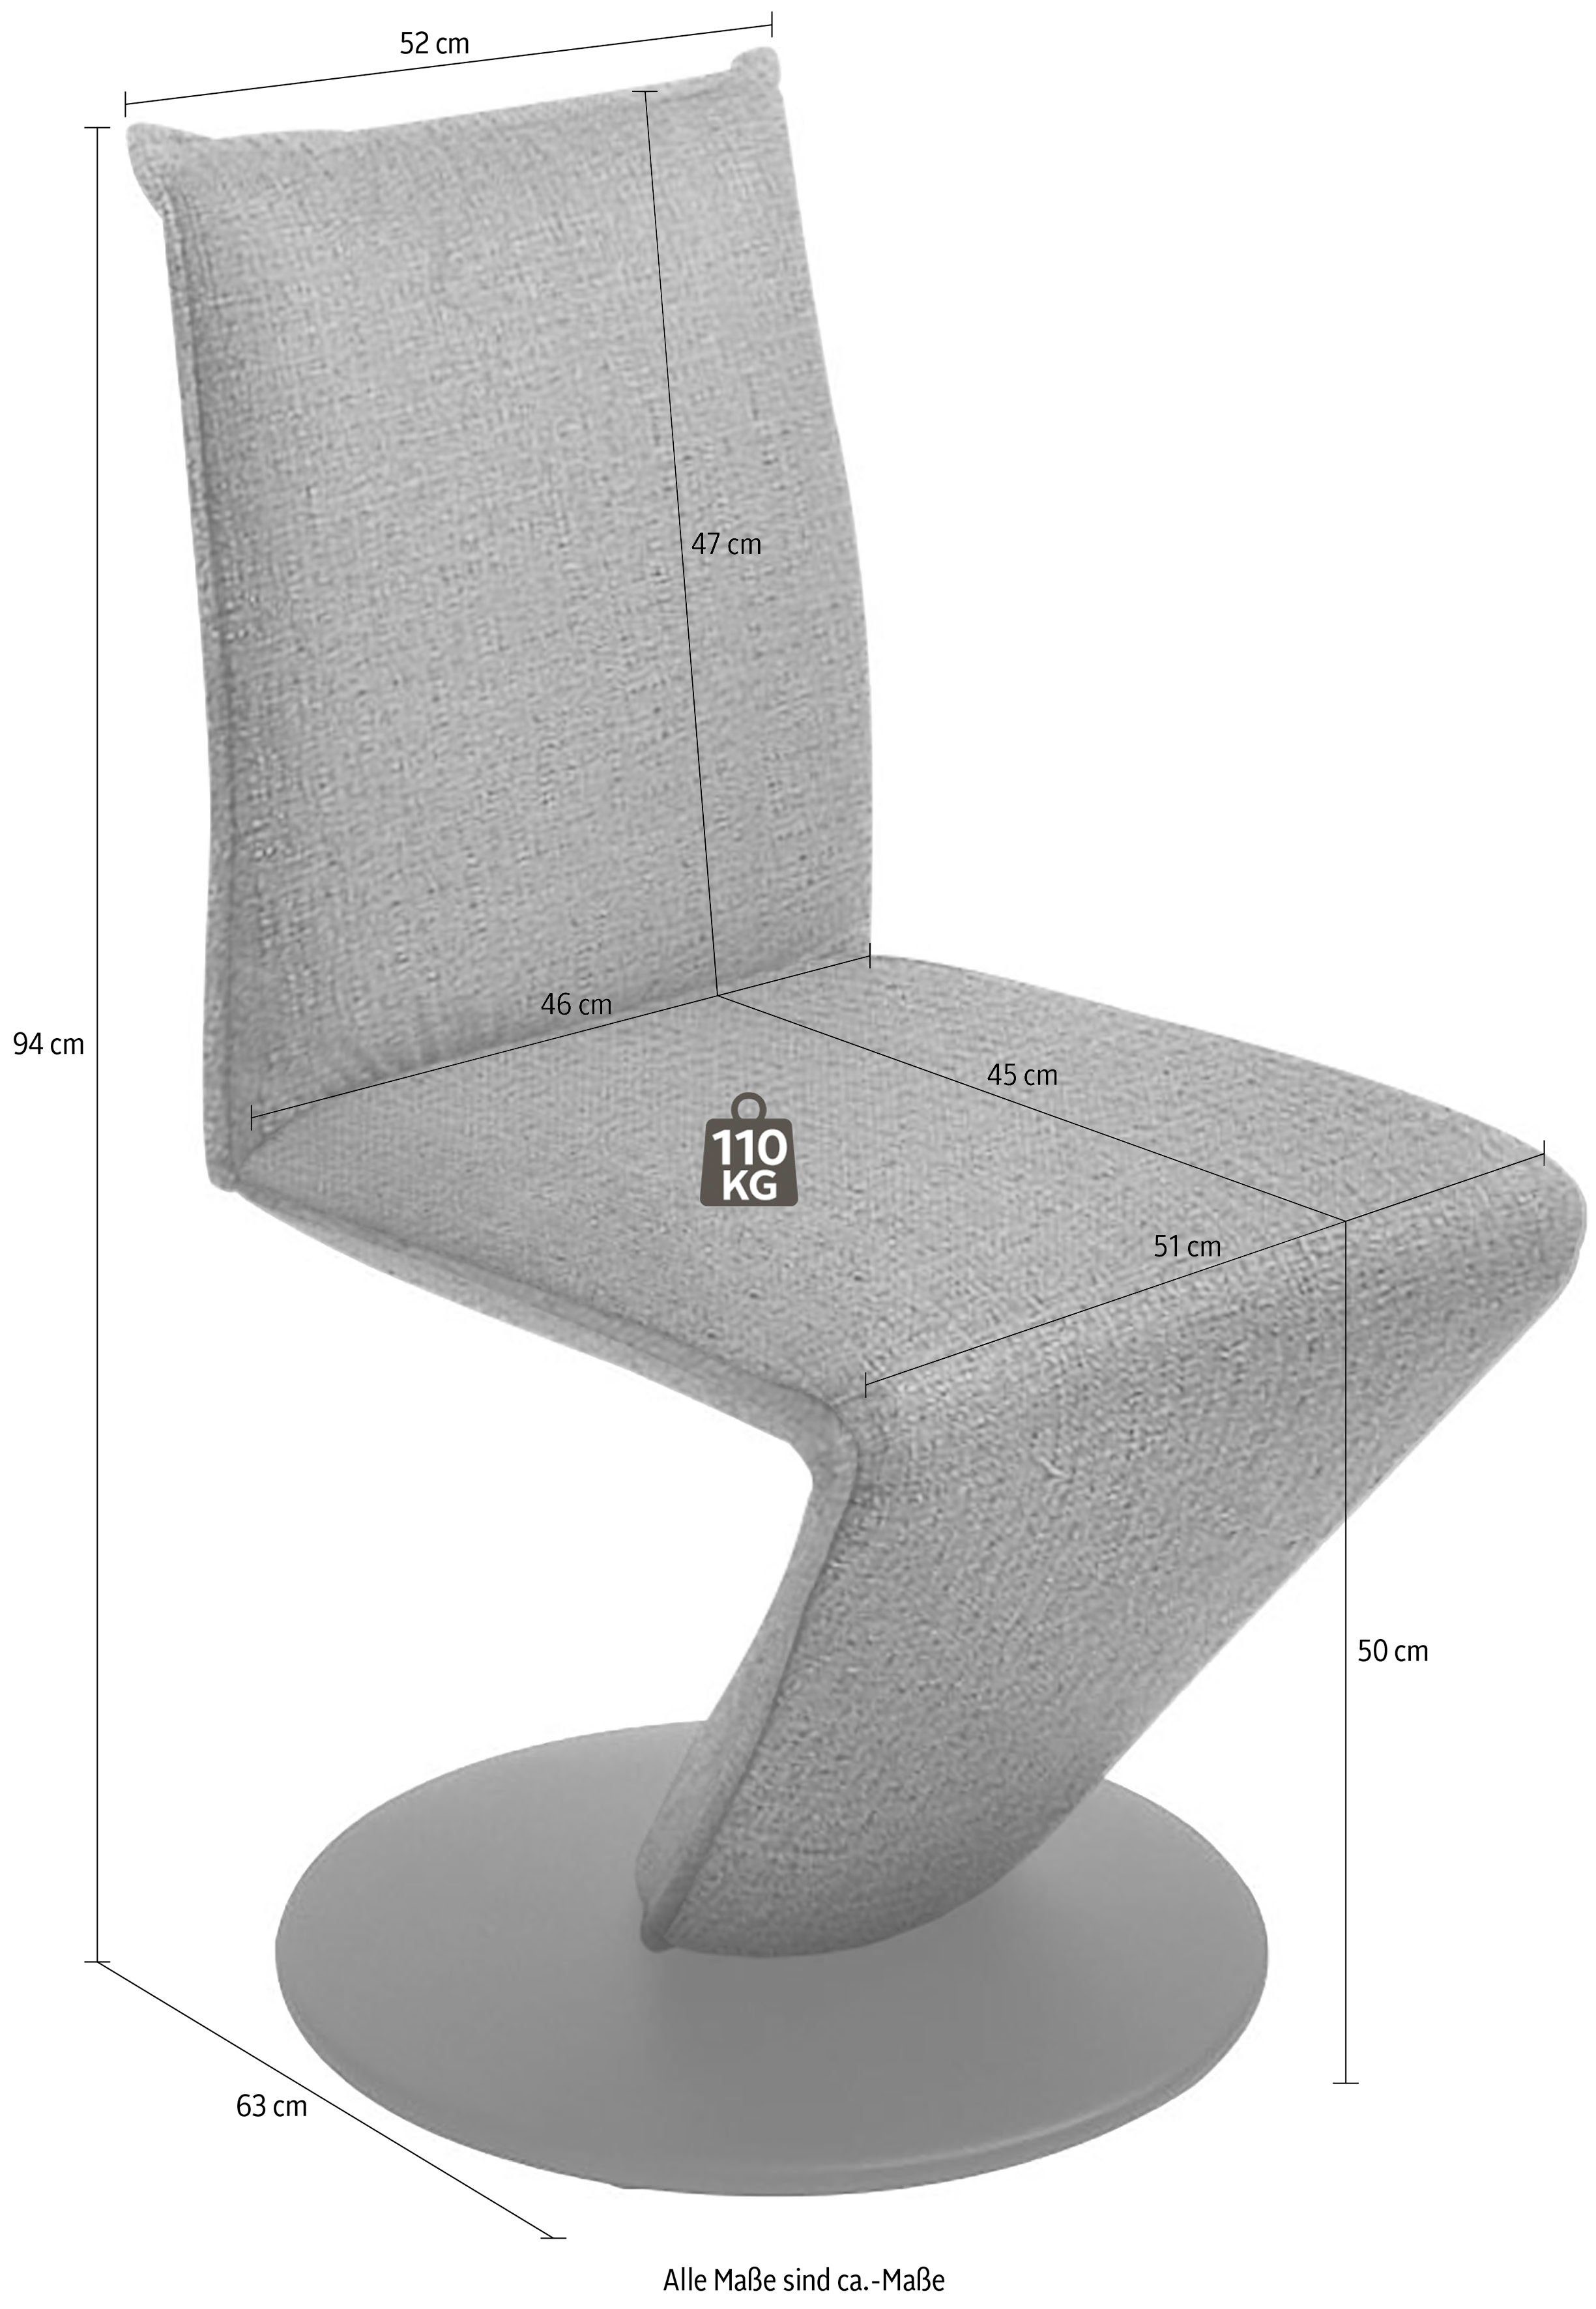 Metall in Drehteller Drive, Drehstuhl Sitzschale, federnder Stuhl Struktur & schwarz K+W Komfort Wohnen mit